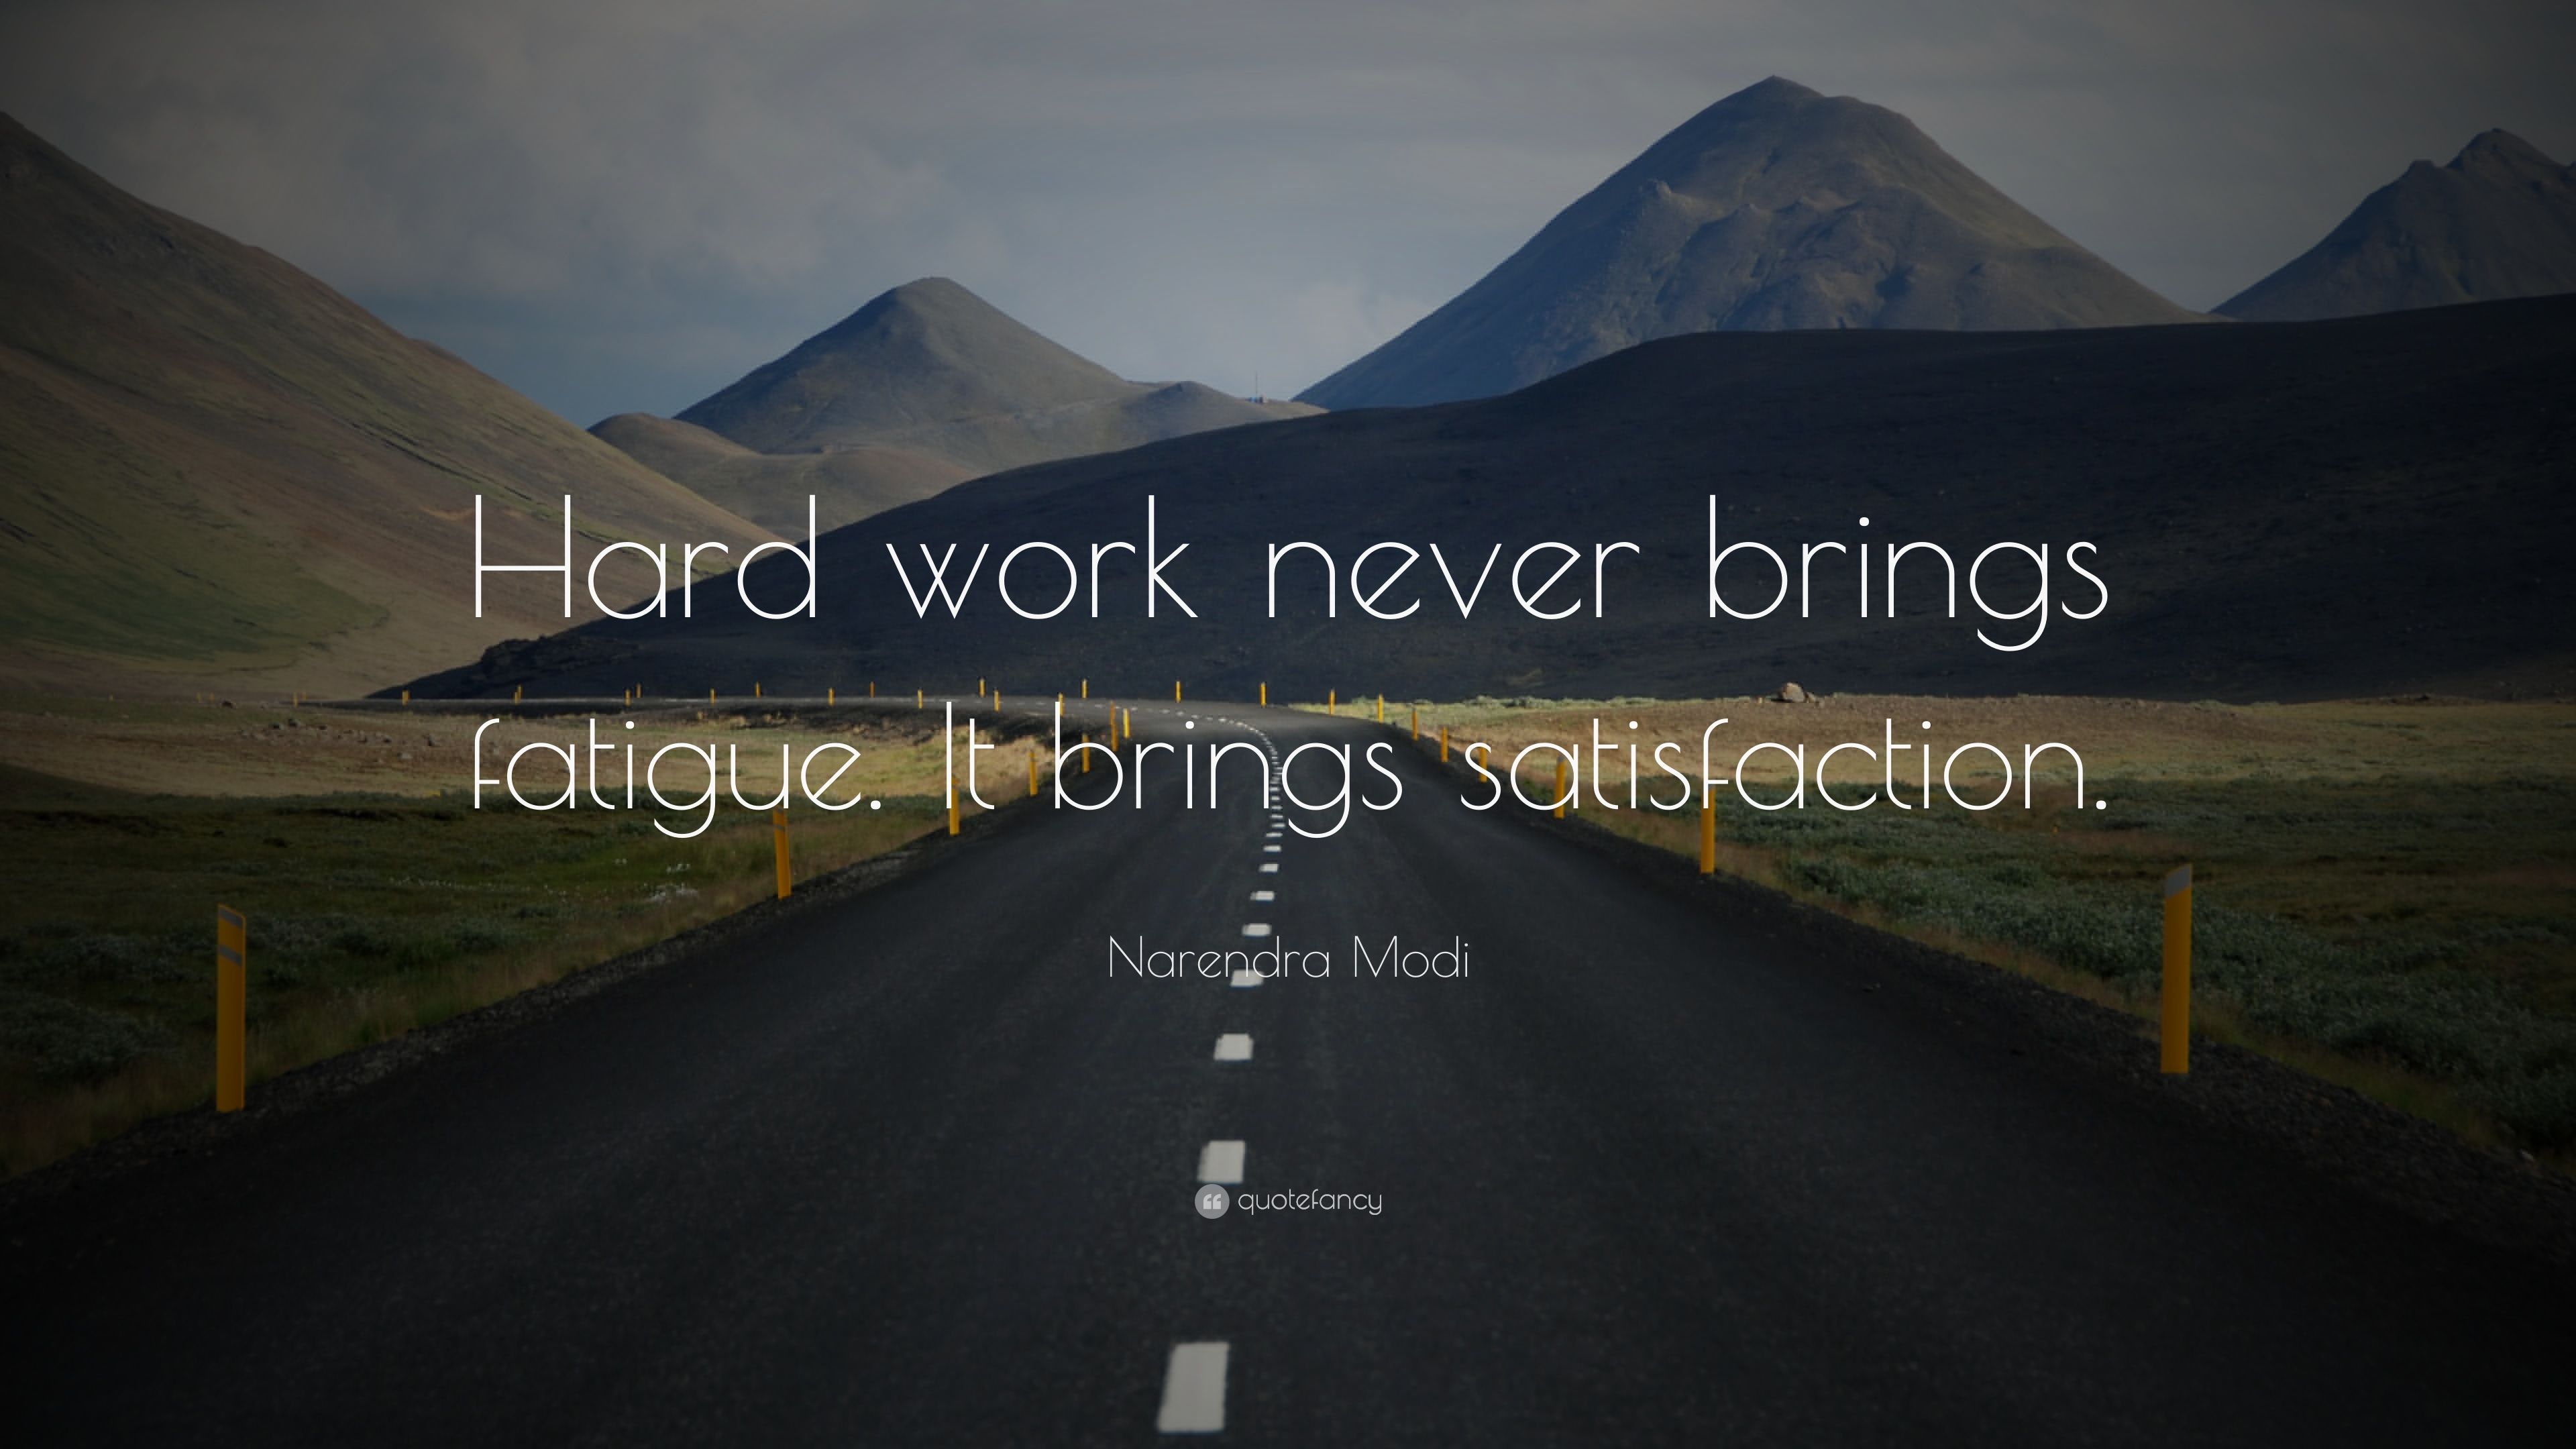 Narendra Modi Quote: “Hard work never brings fatigue. It brings satisfaction.” (12 wallpaper)